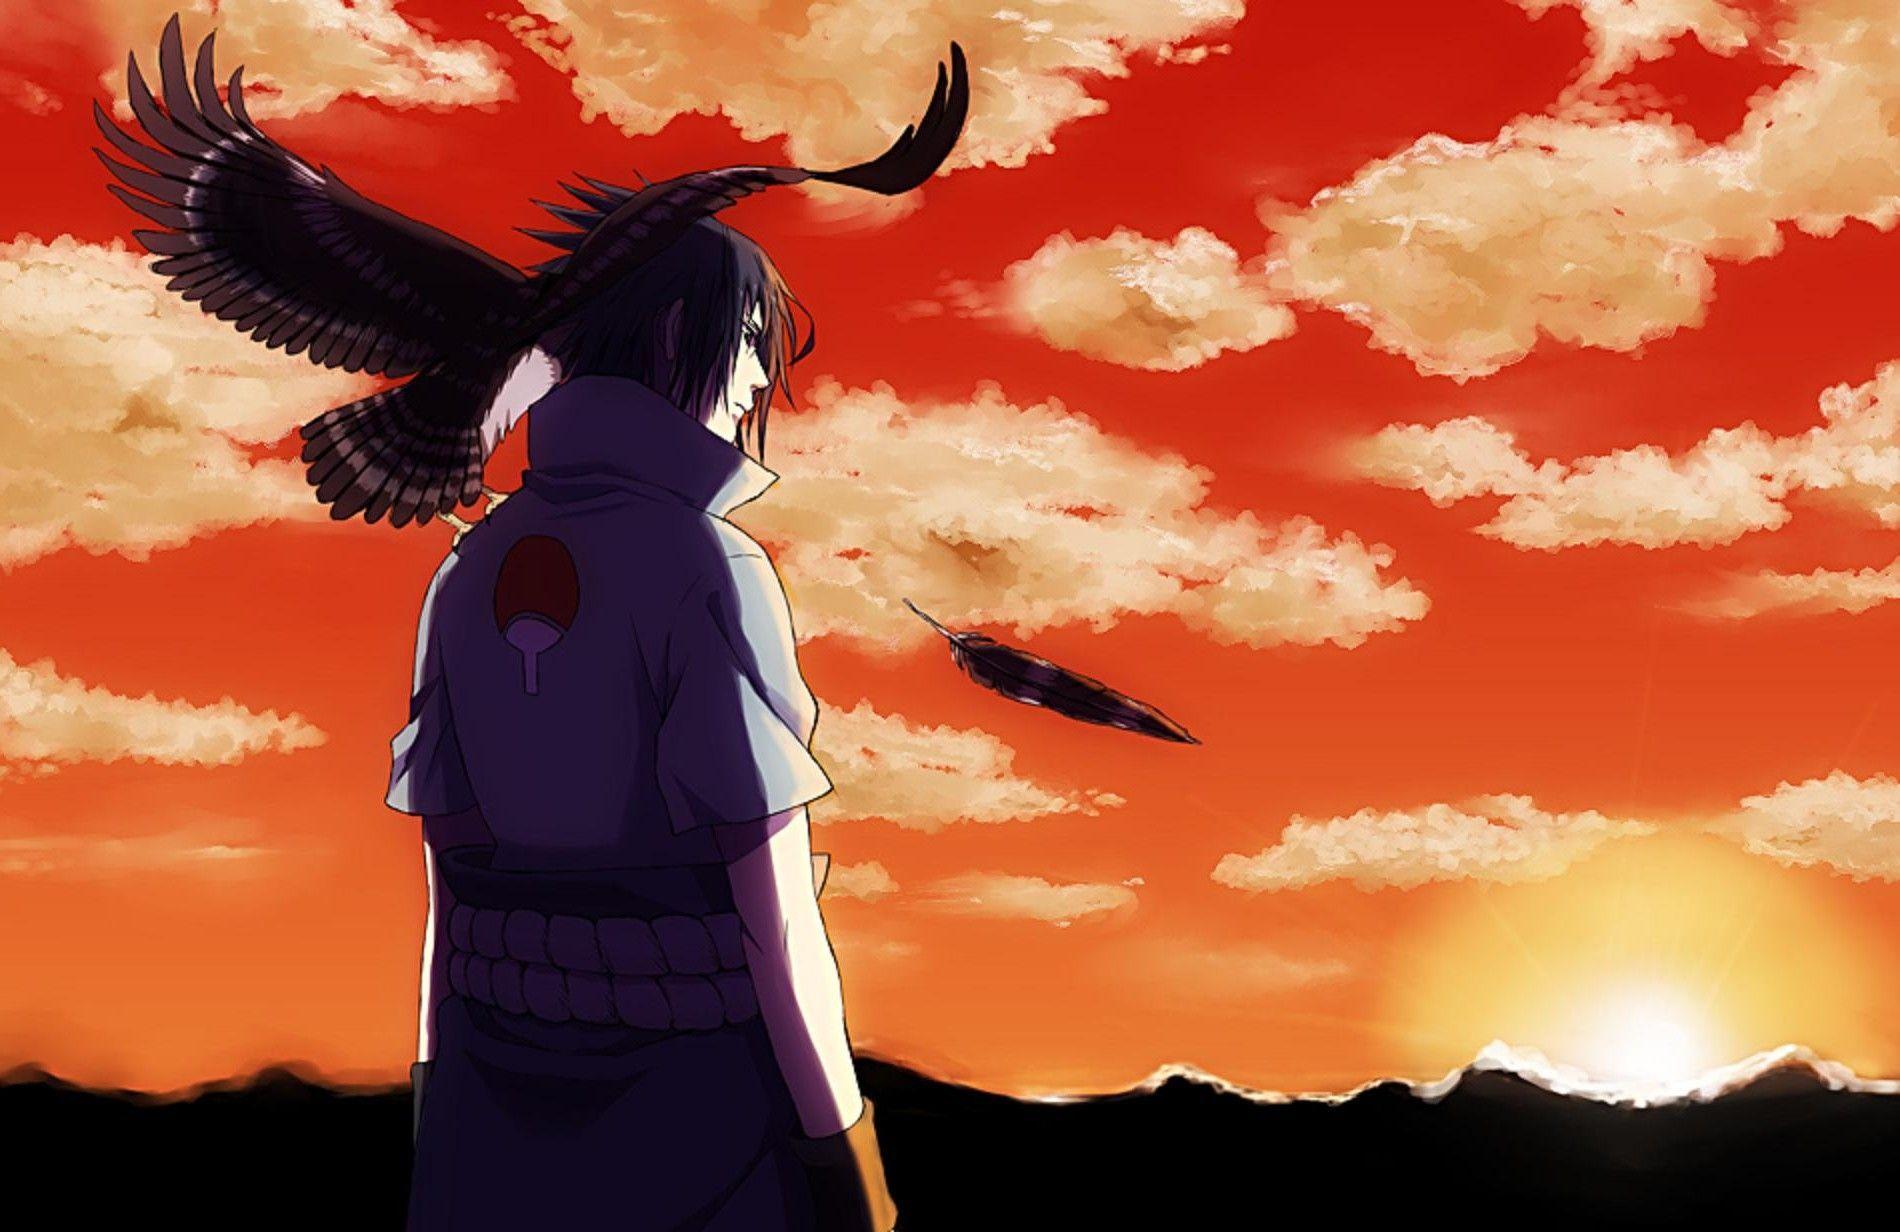 Naruto Shippuden Sasuke Image Background, Wallpaper, HD